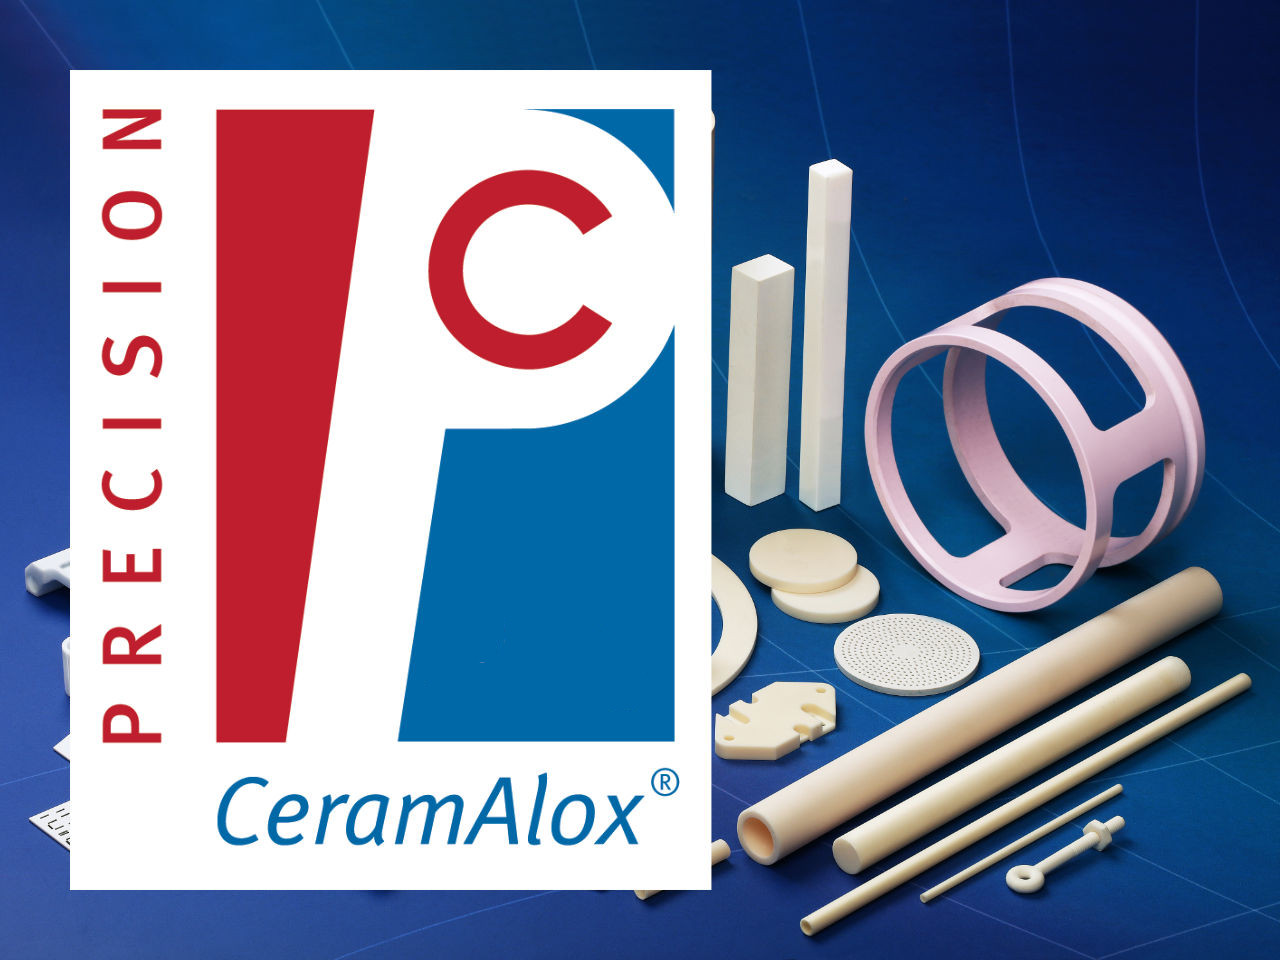 Alumina Material Brand CeramAlox